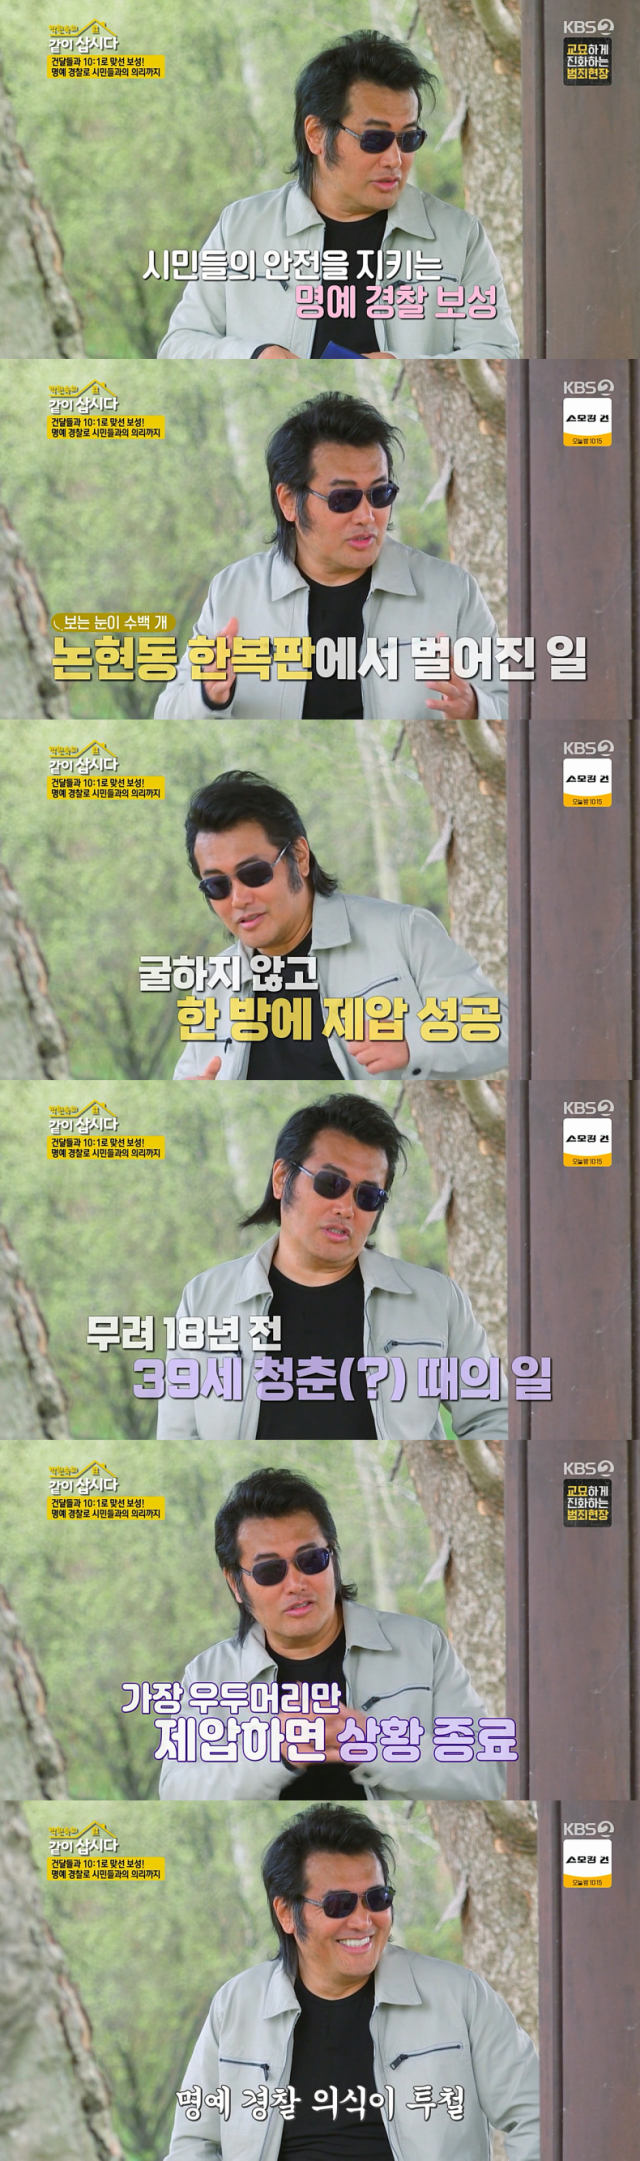 홀로 조폭 10명과 싸운 일화를 공개한 배우 김보성./KBS 2TV 